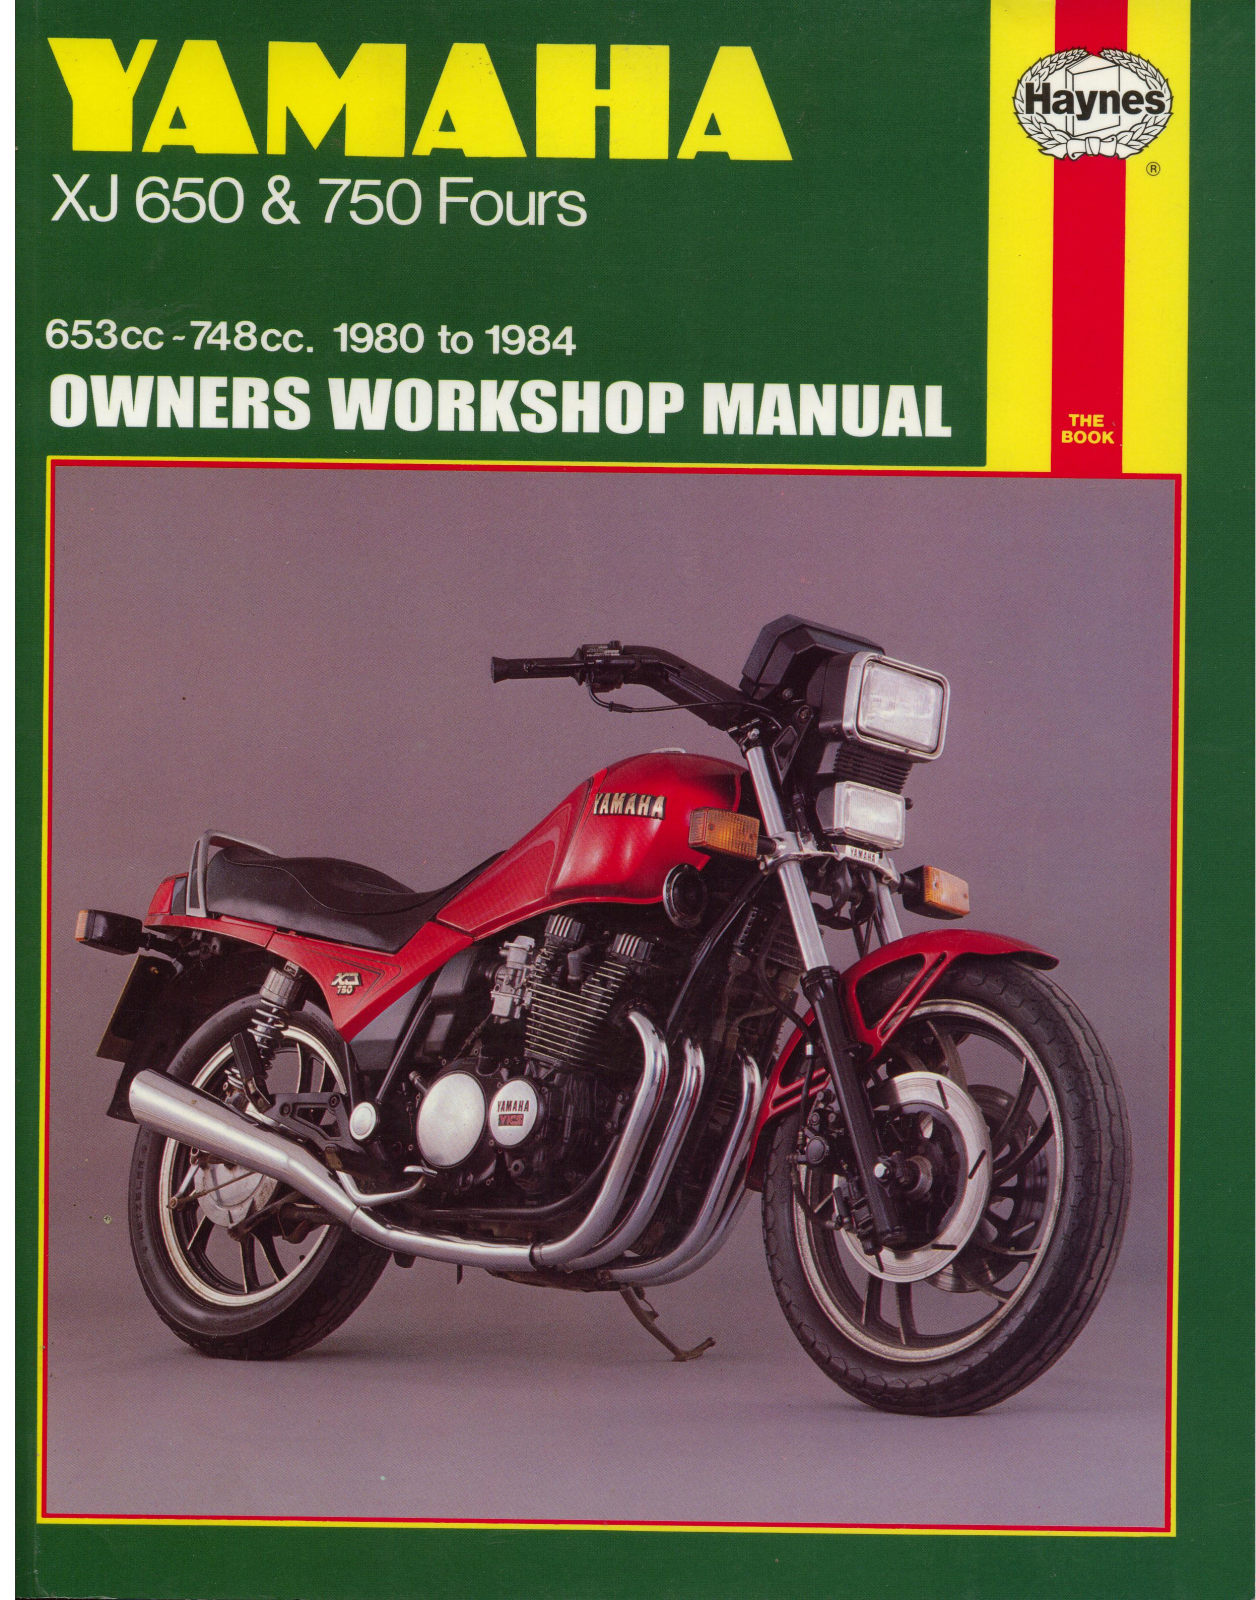 Yamaha XJ650, XJ750 Service Manual